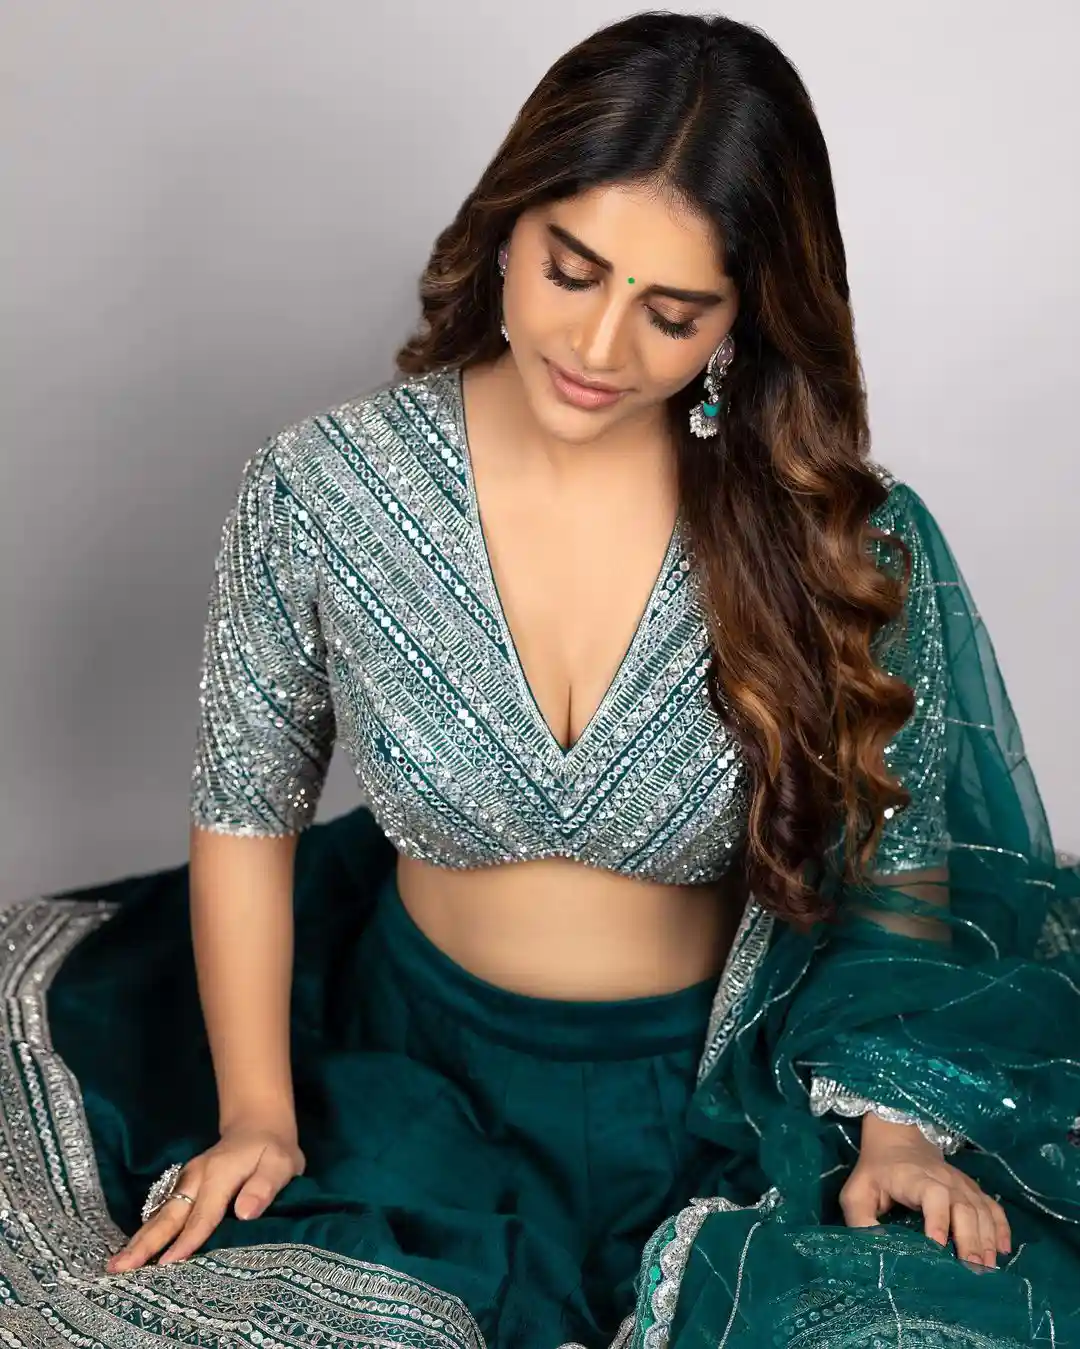 Nabha Natesh showing her beautiful waist